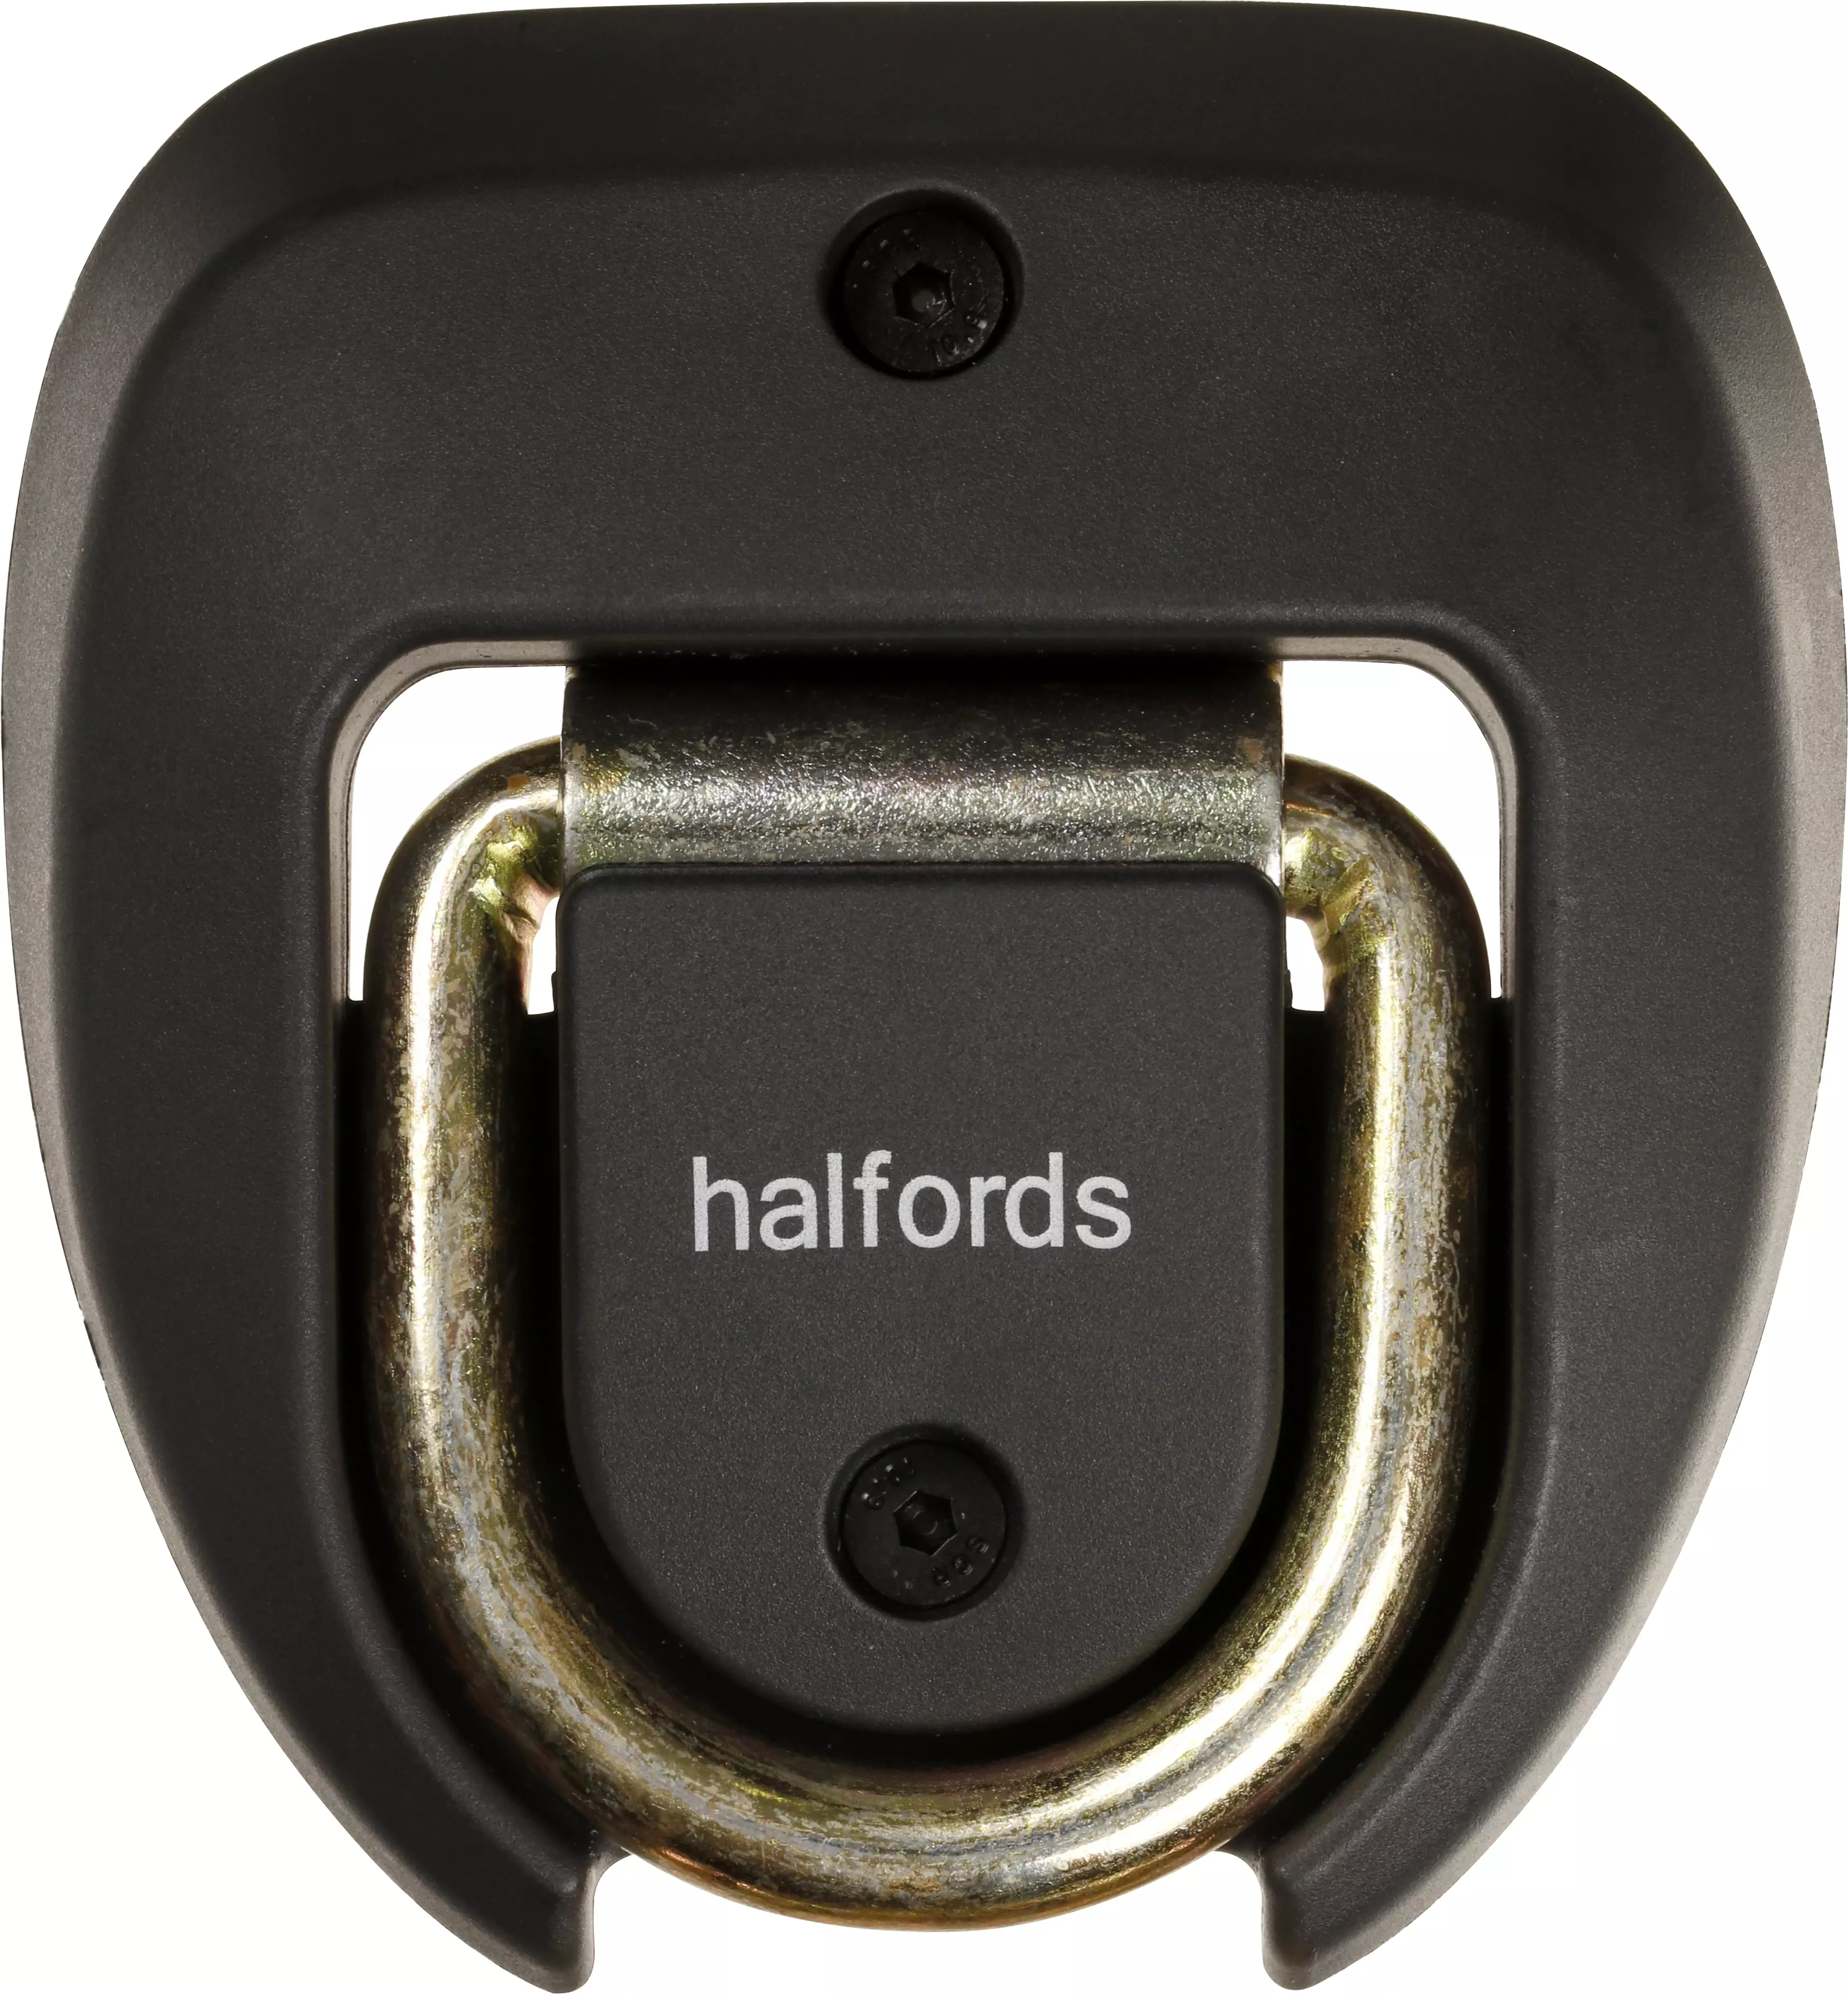 halfords motorbike lock